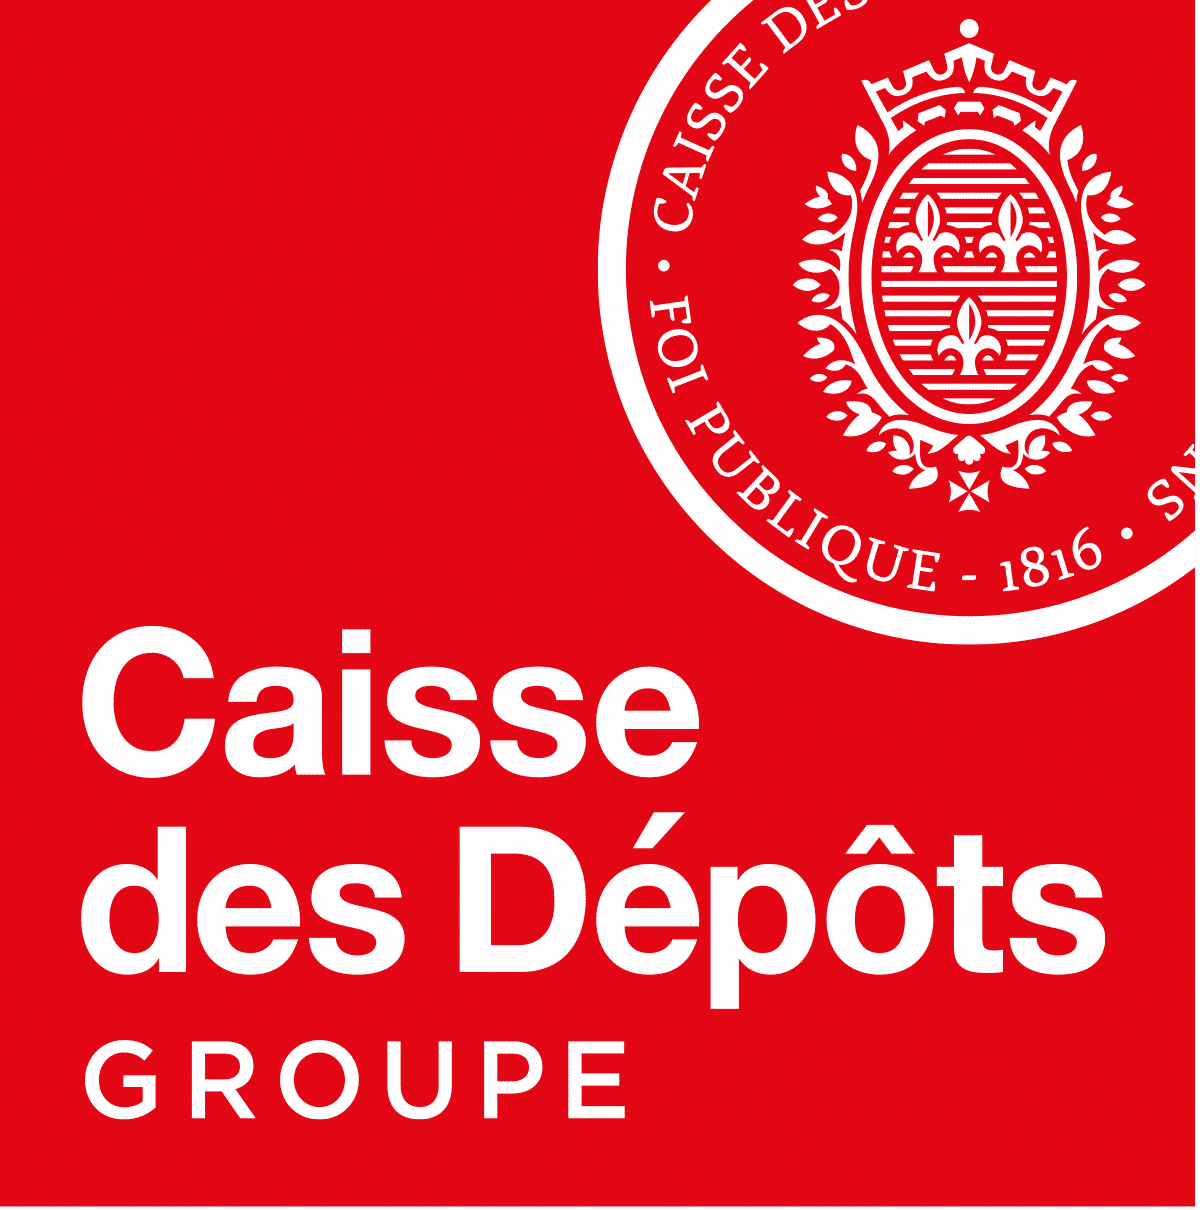 Caisse des Depots Groupe logo